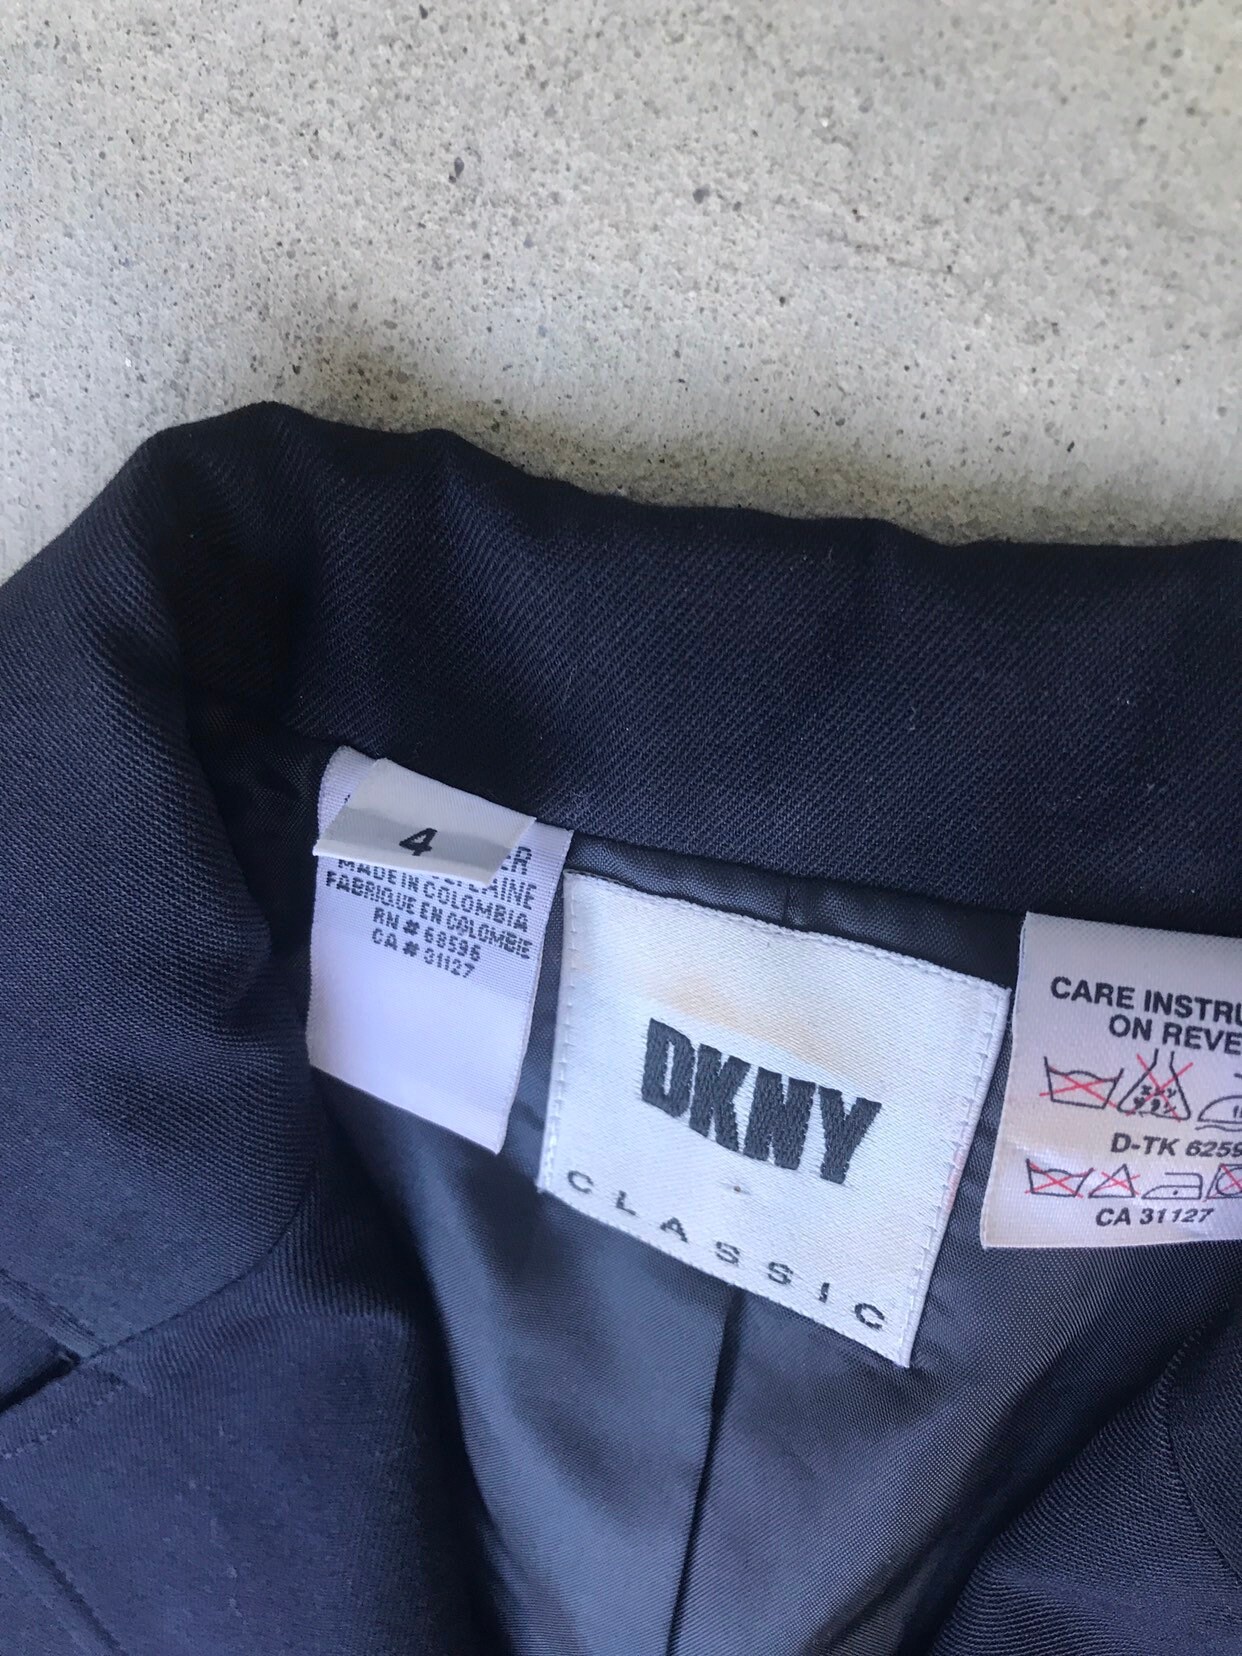 DKNY Vintage Navy Blue Emblem Blazer Jacket Size 4 - Etsy